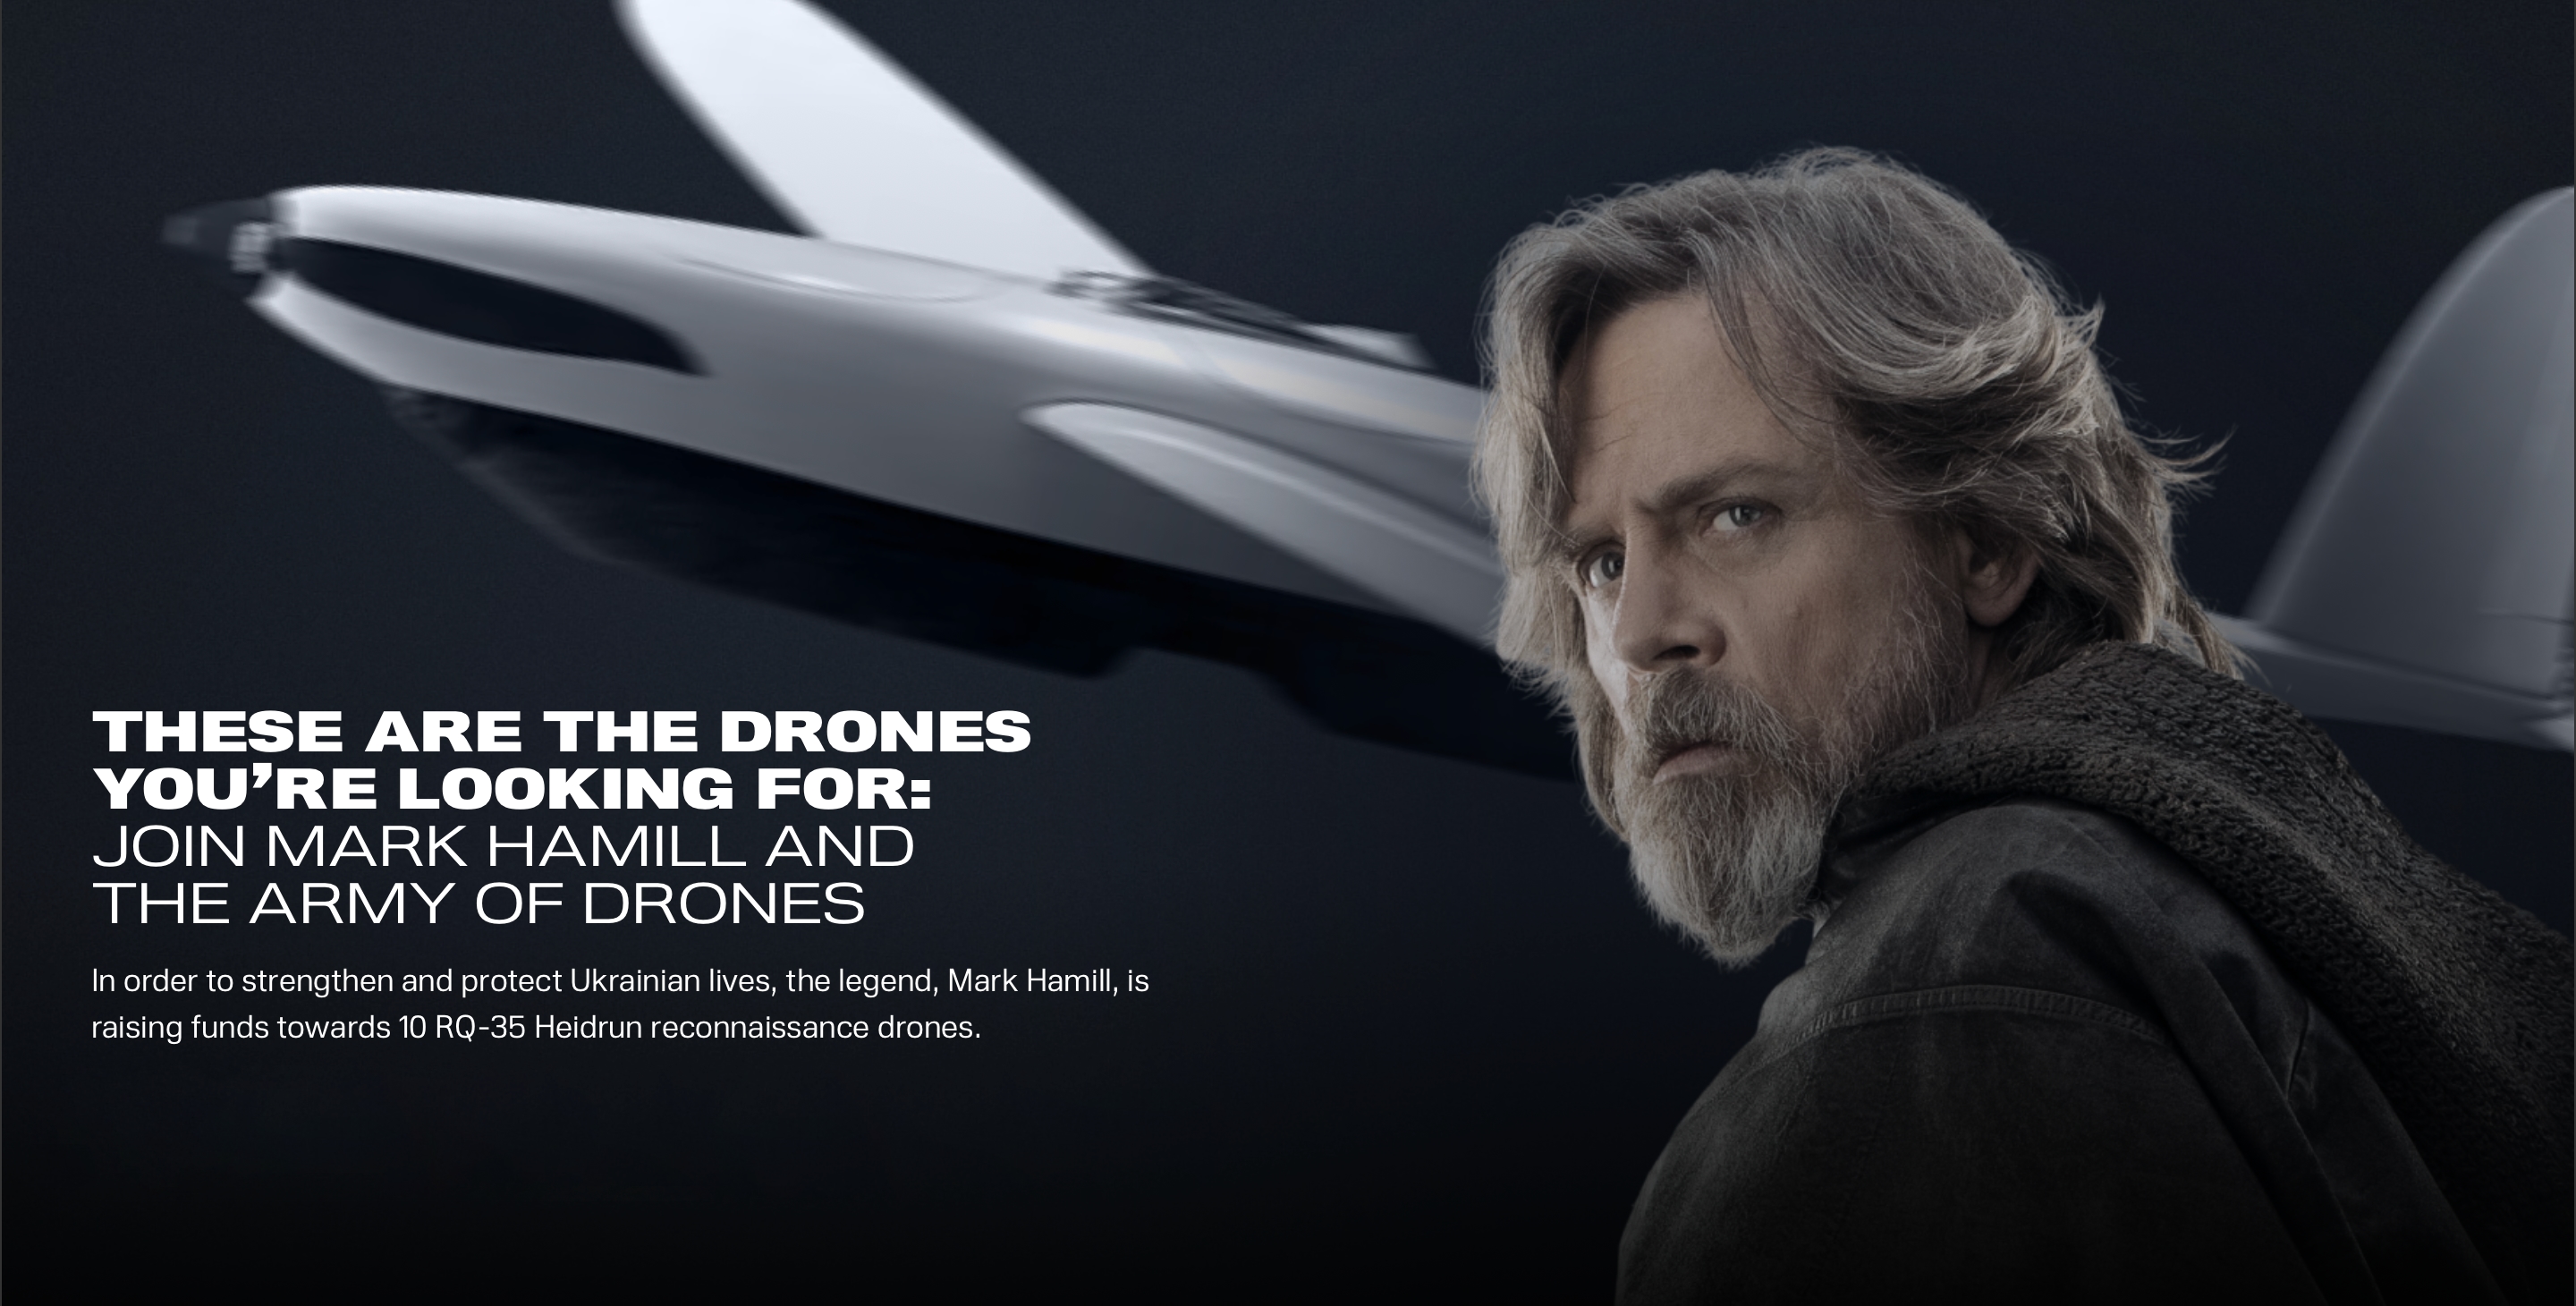 El actor de "La guerra de las galaxias" Mark Hamill recauda fondos a través de la plataforma UNITED24 para los UAV de reconocimiento RQ-35 Heidrun destinados a las AFU.